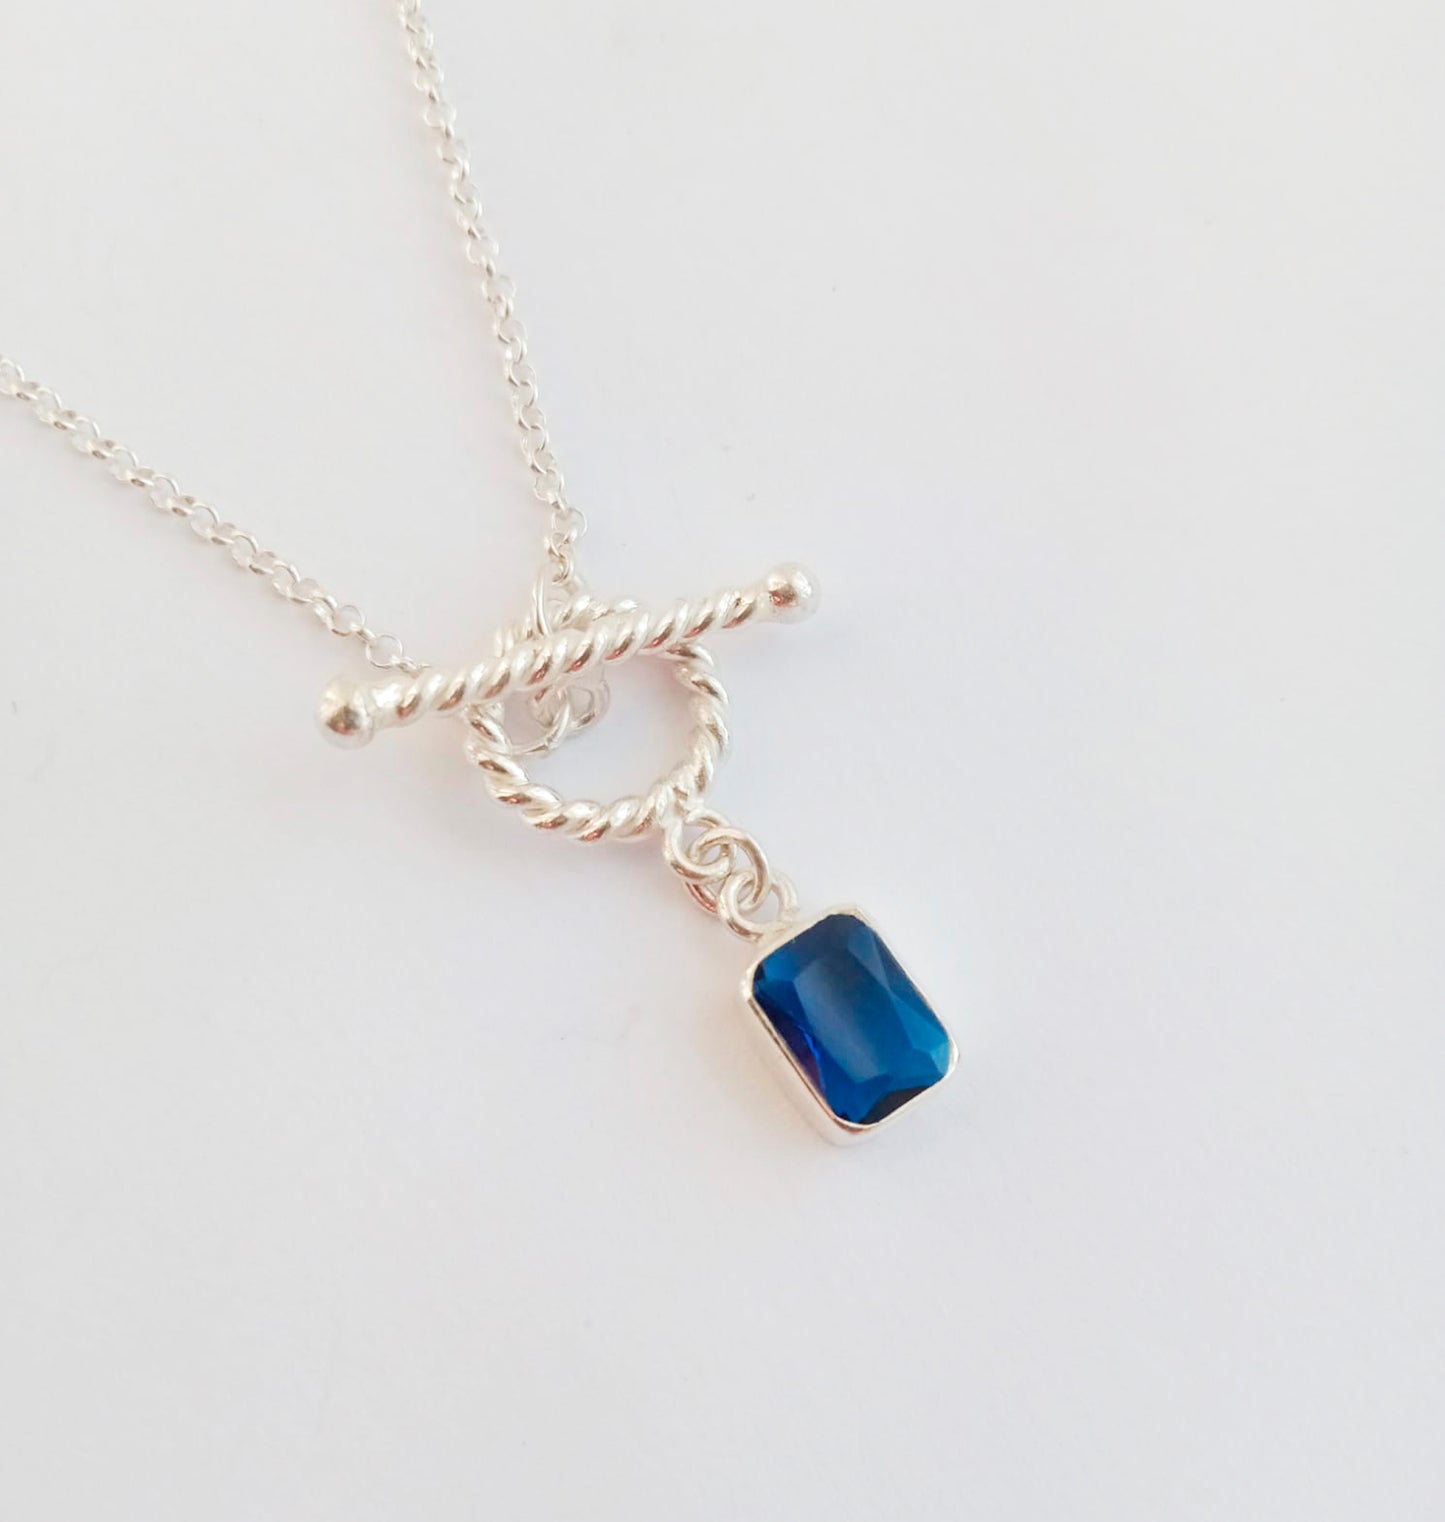 Mini Blue Zircon Toggle Necklace